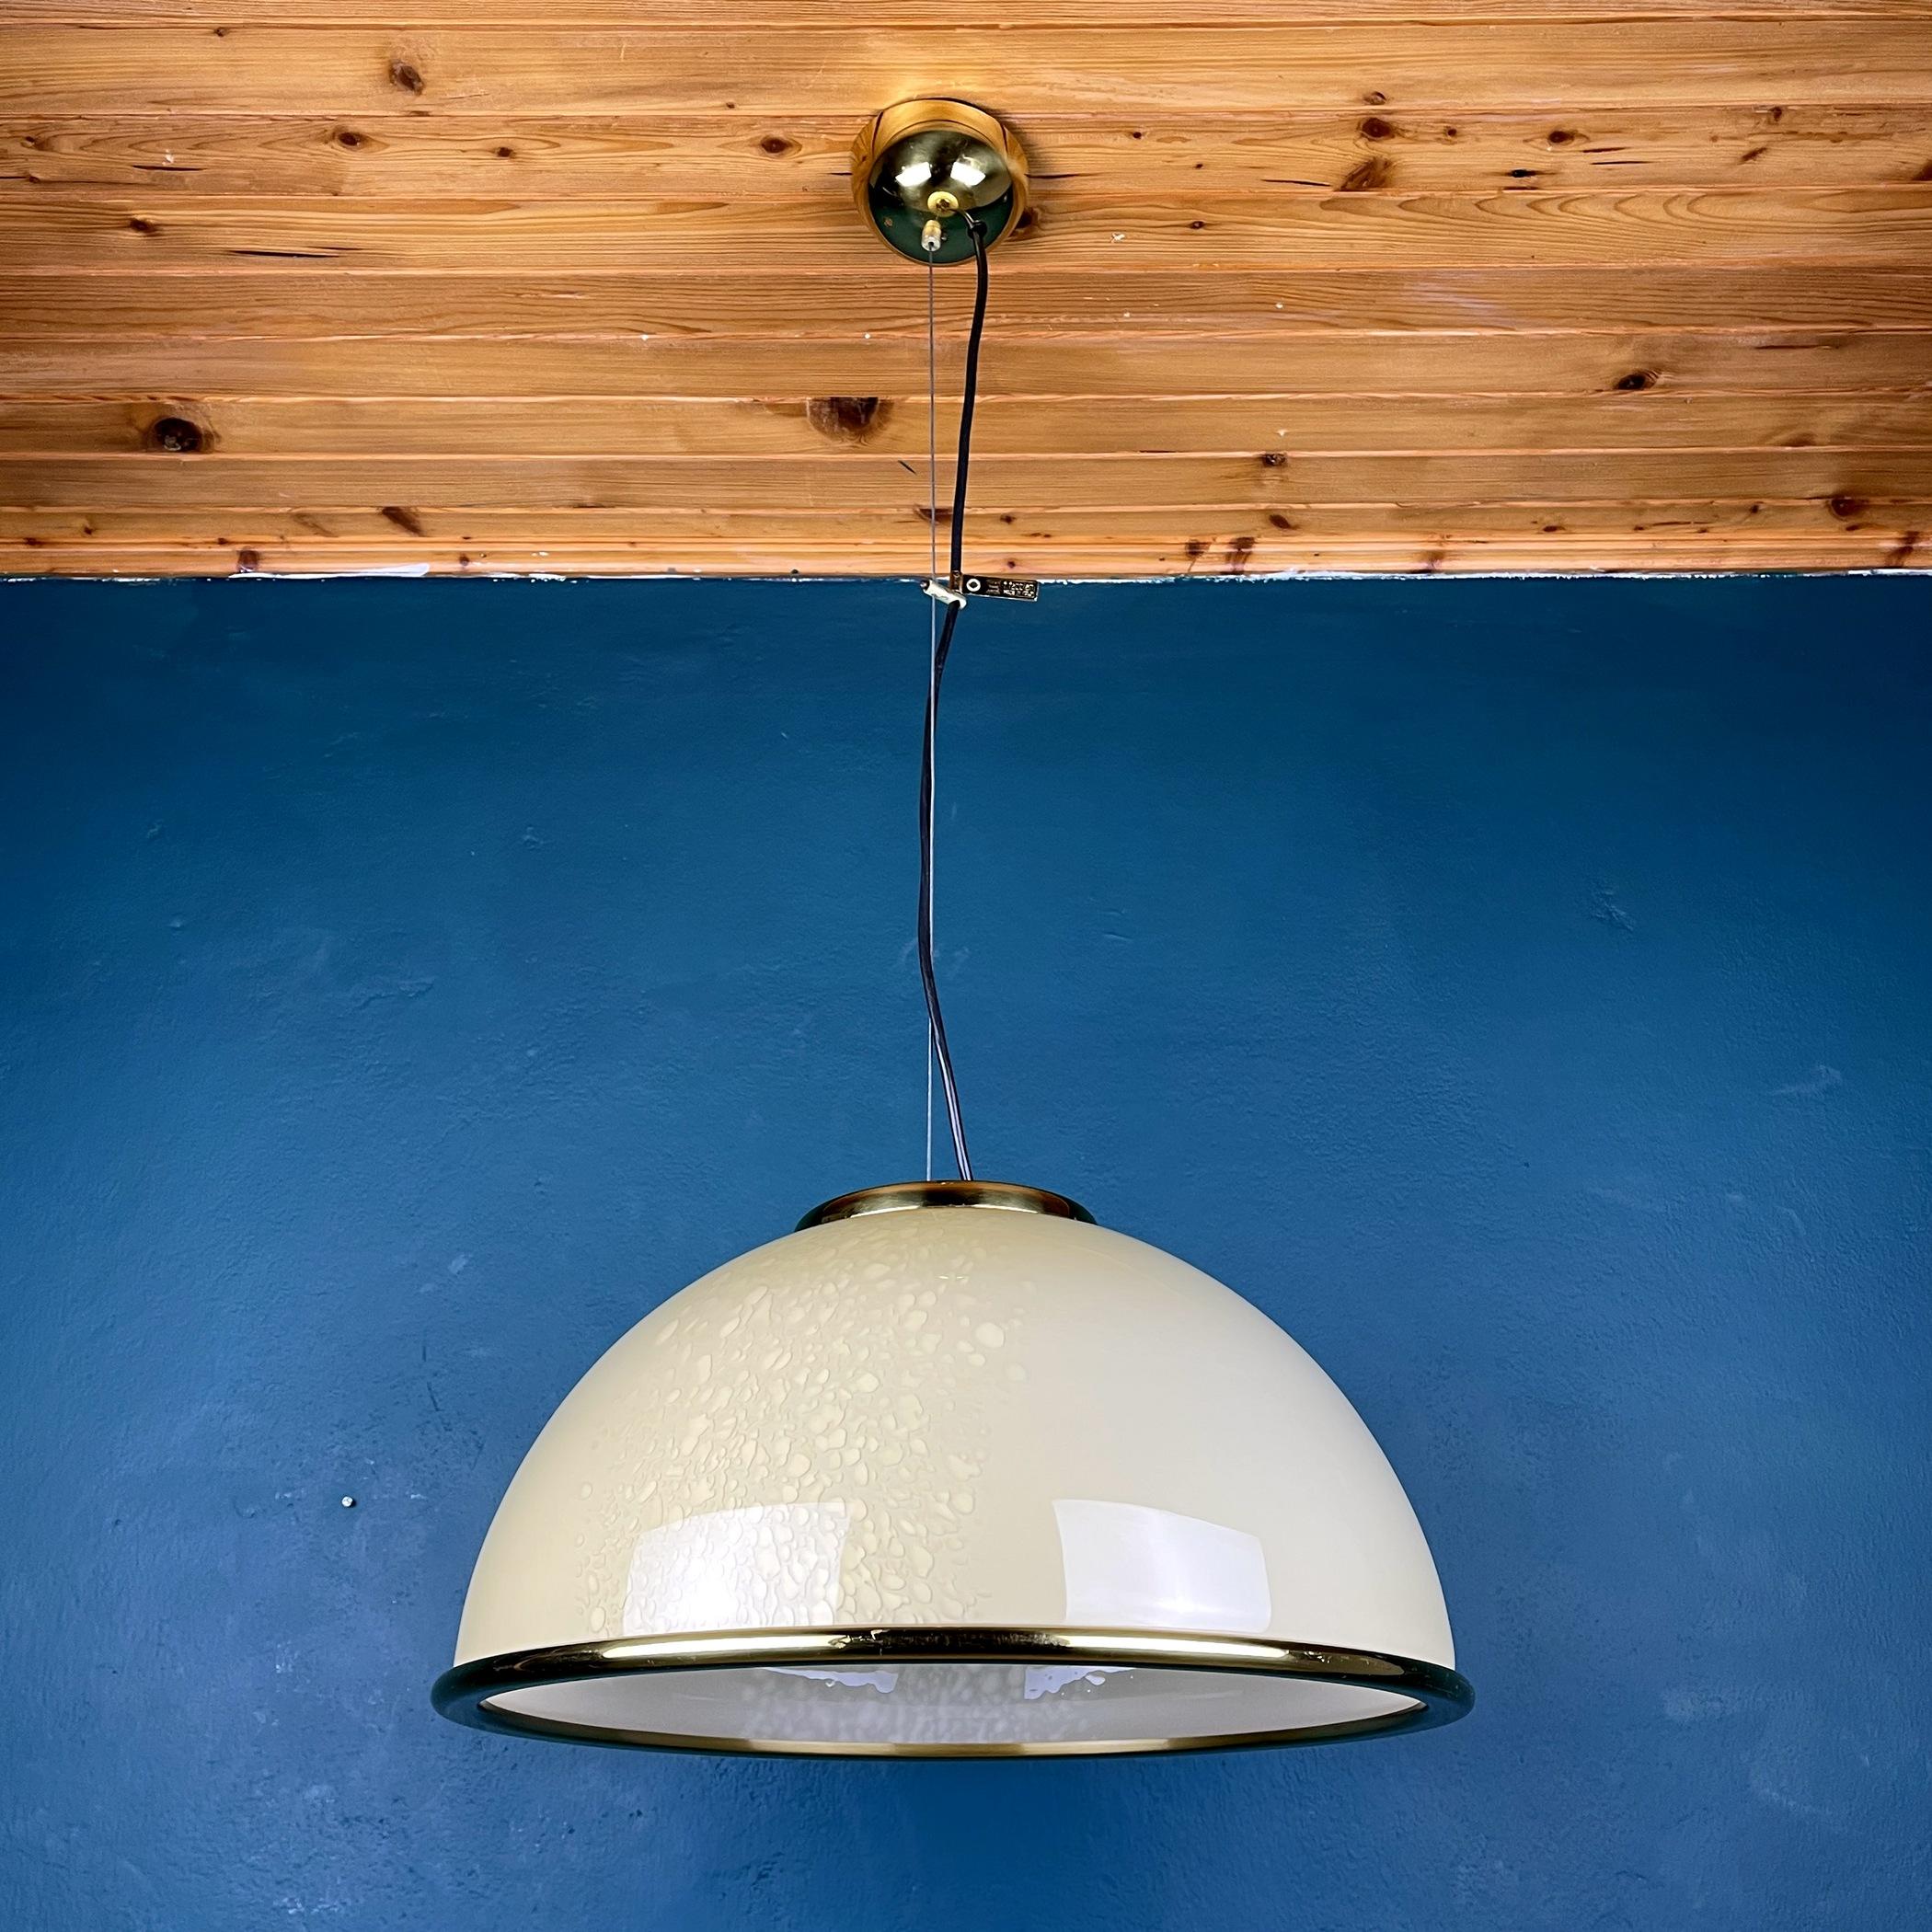 Diese beigefarbene, wunderschöne Lampe von F. Fabbian wurde in den 70er Jahren in Italien hergestellt. Charmantes beiges Murano-Glas mit schönen Flecken. Der Rand aus Messing ist typisch für Lampen von F. Fabbian.
Perfekter Vintage-Zustand. Keine